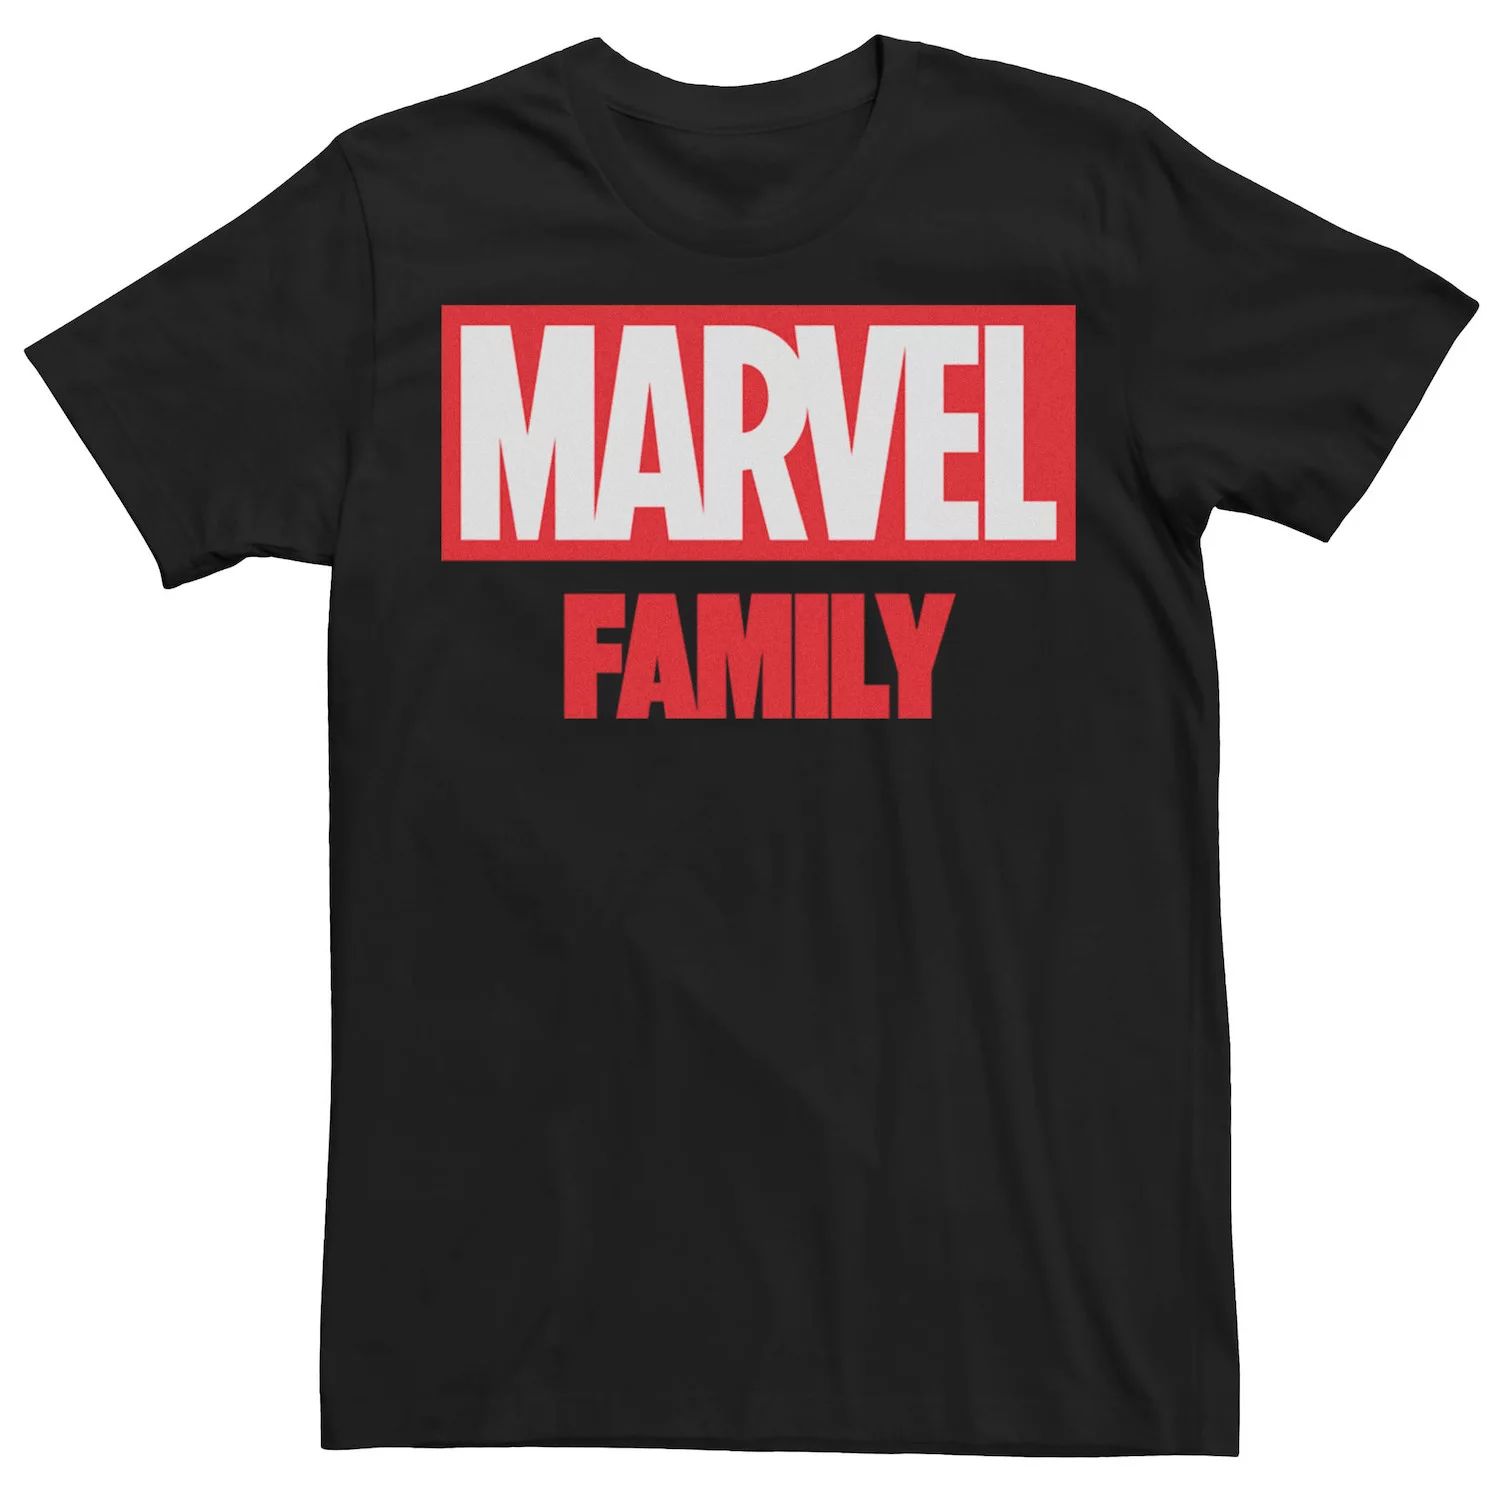 Мужская семейная футболка с простым логотипом Marvel